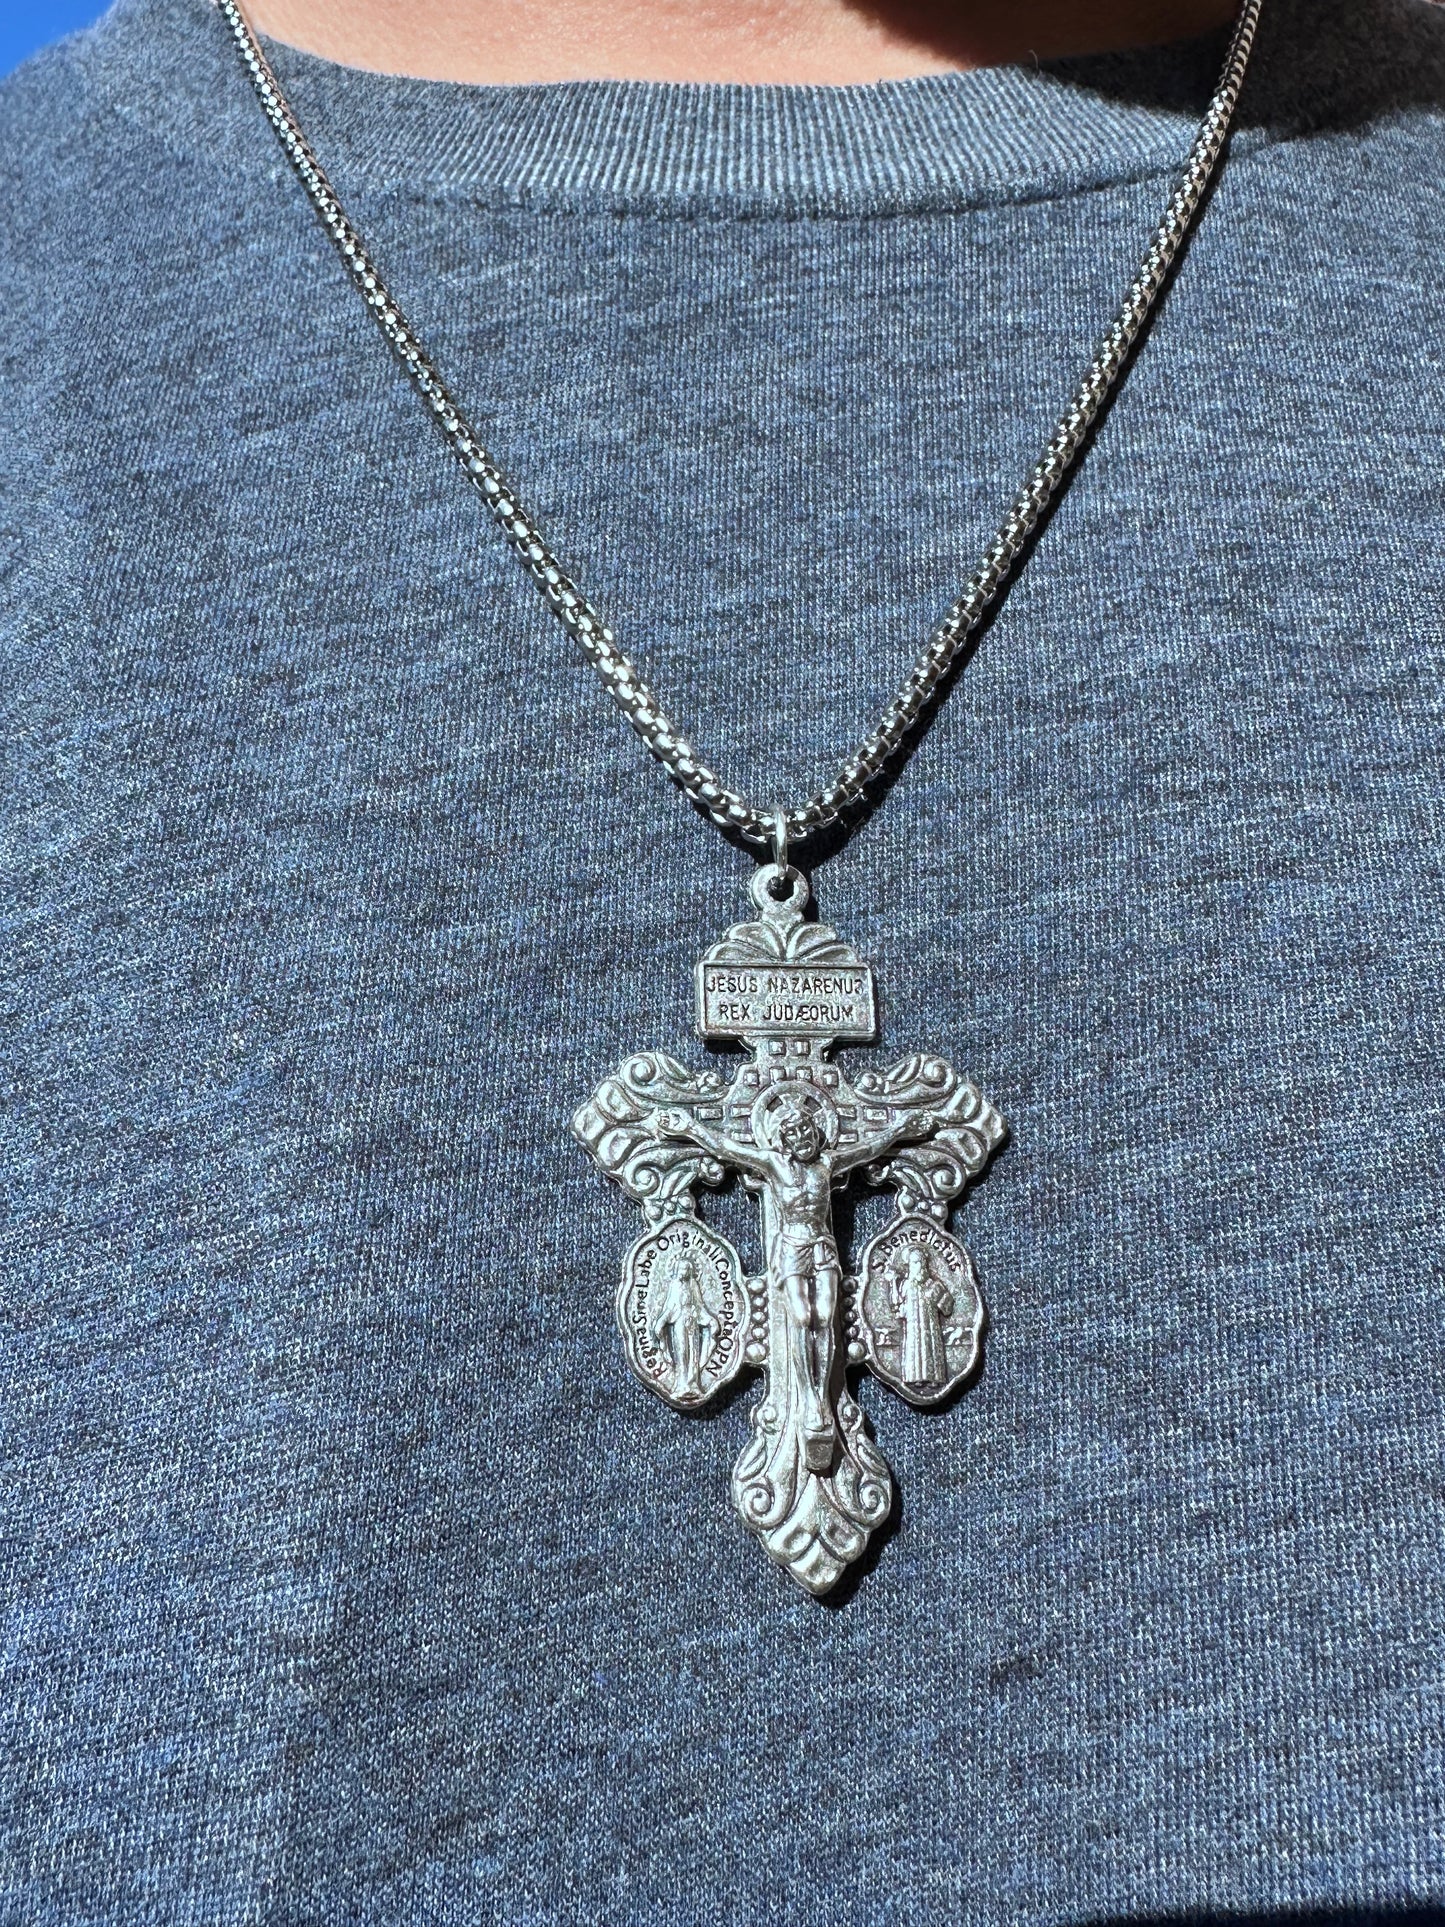 The Pardon Crucifix Necklace